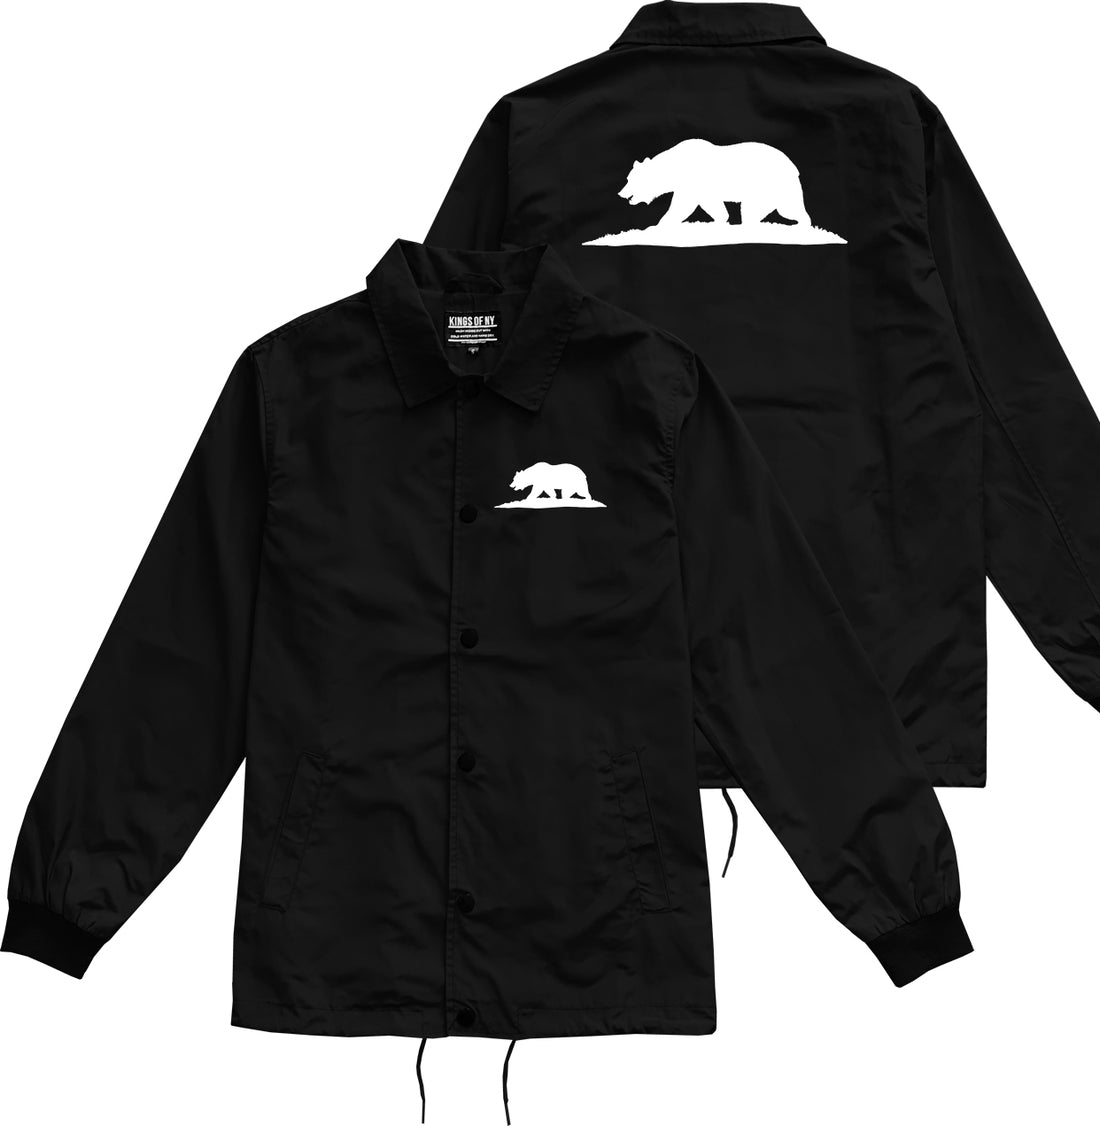 Bear Logo California Republic Black Coaches Jacket by Kings Of NY